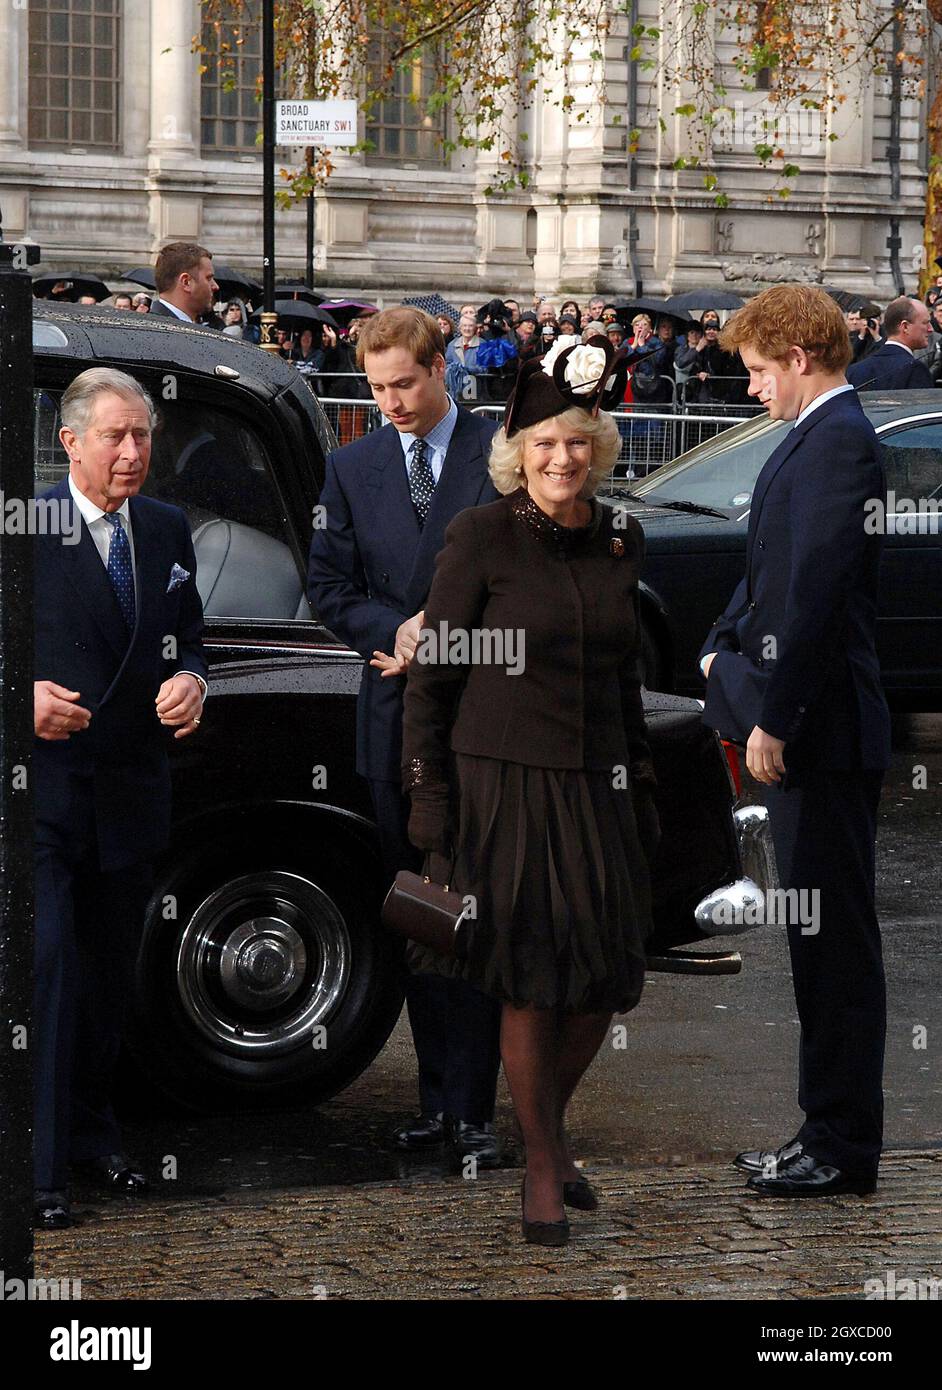 Le prince Charles, le prince de Galles, Camilla, la duchesse de Cornouailles, le prince William et le prince Harry arrivent pour un service de célébration pour l'anniversaire du mariage de diamants de la reine Elizabeth II et du prince Philip, duc d'Édimbourg à l'abbaye de Westminster à Londres. Banque D'Images